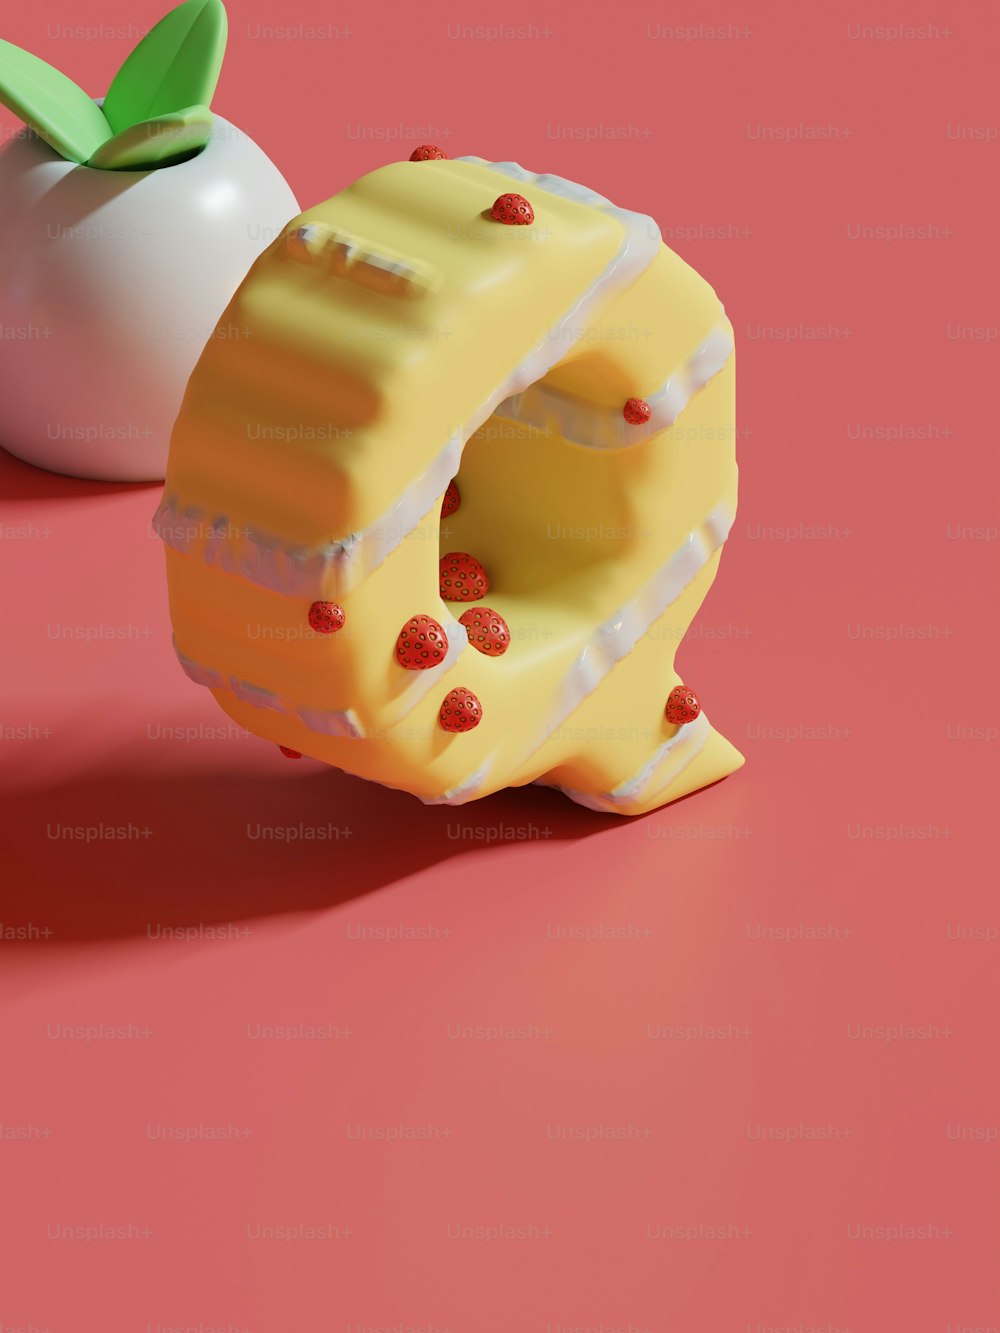 Un pedazo de pastel junto a una manzana sobre una superficie rosada